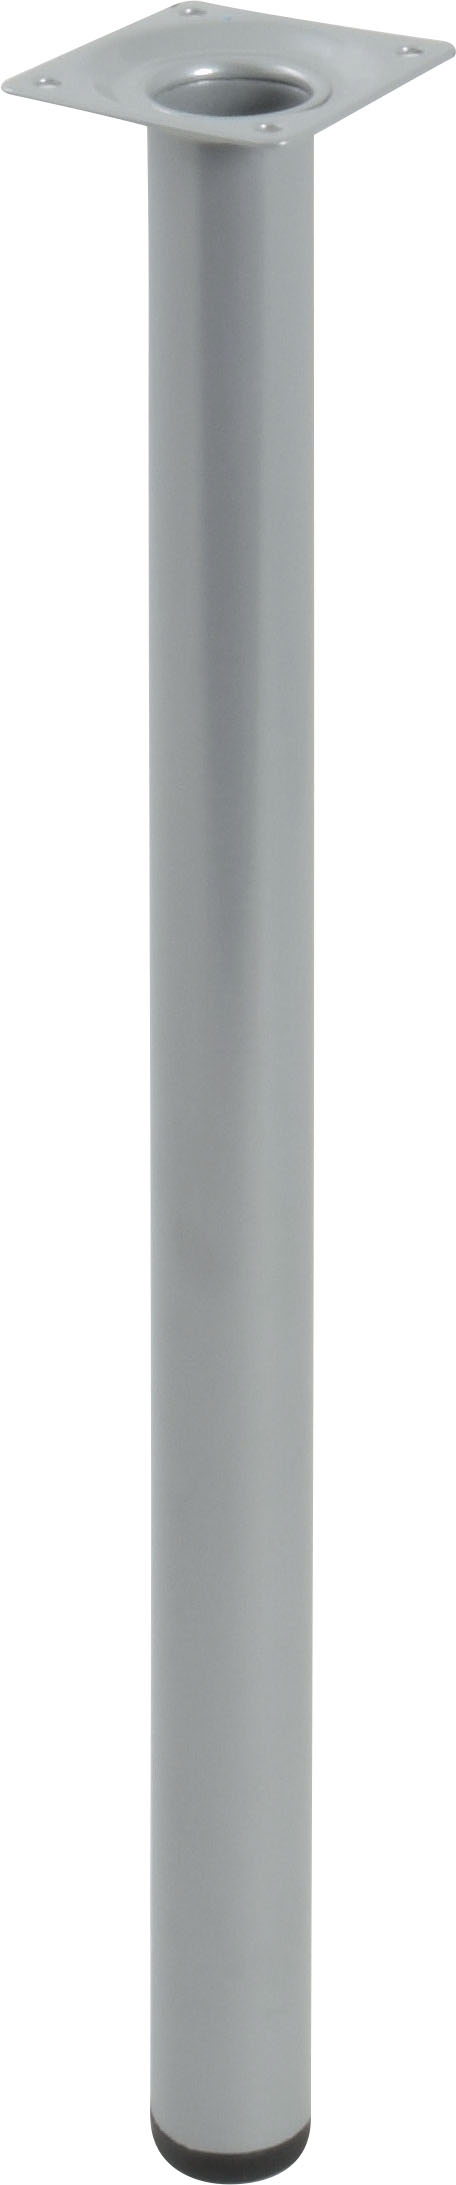 Pied cylindrique métal gris H.400 Ø30 mm - EVOLUDIS